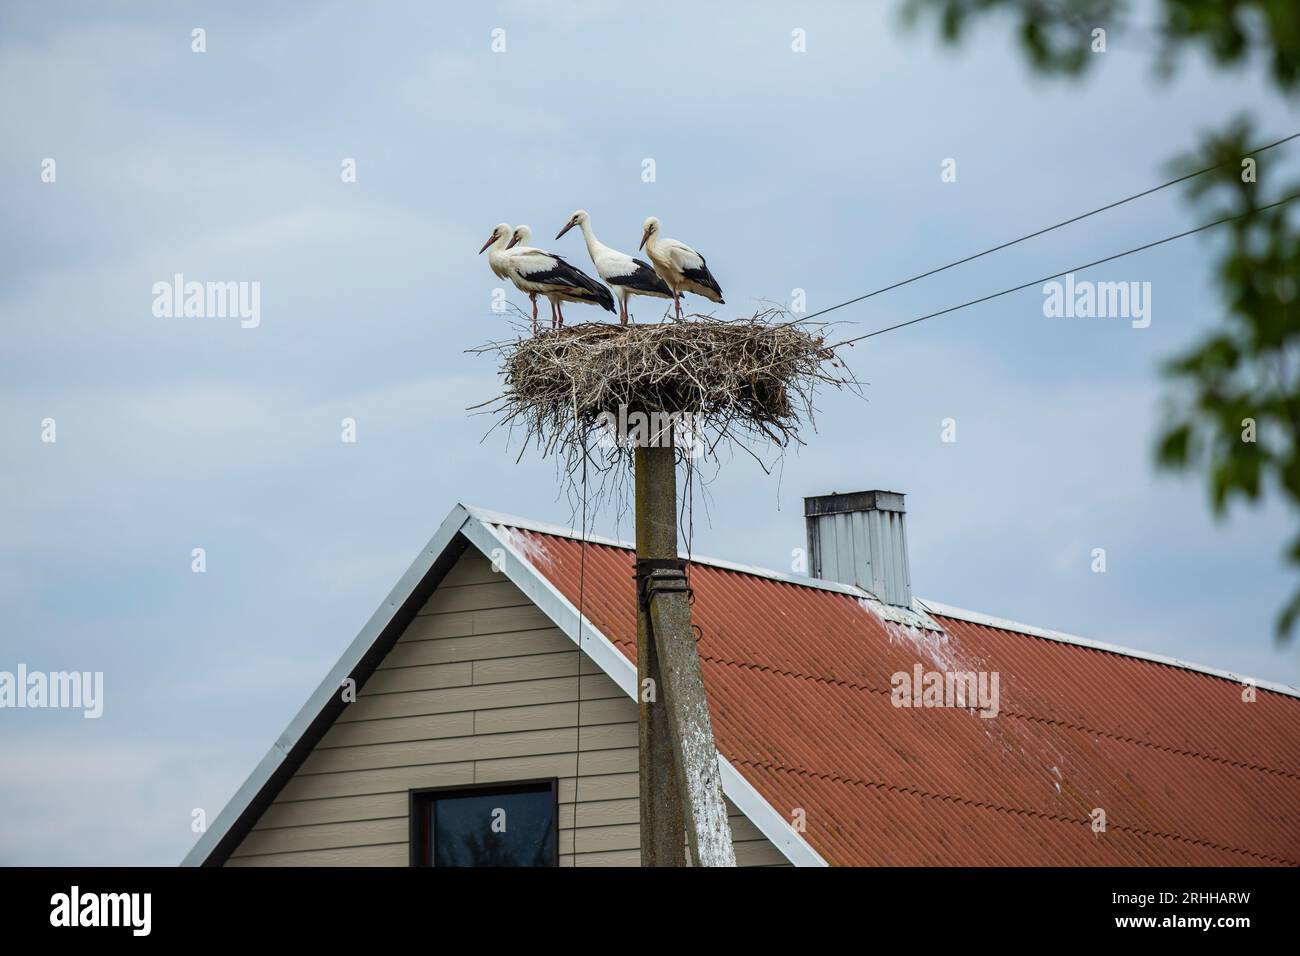 In der malerischen Landschaft Litauens erhebt sich ein alter Strommast gegen den Himmel. Anstatt jedoch lediglich als Übertragungsmittel für Elektrizi Banque D'Images